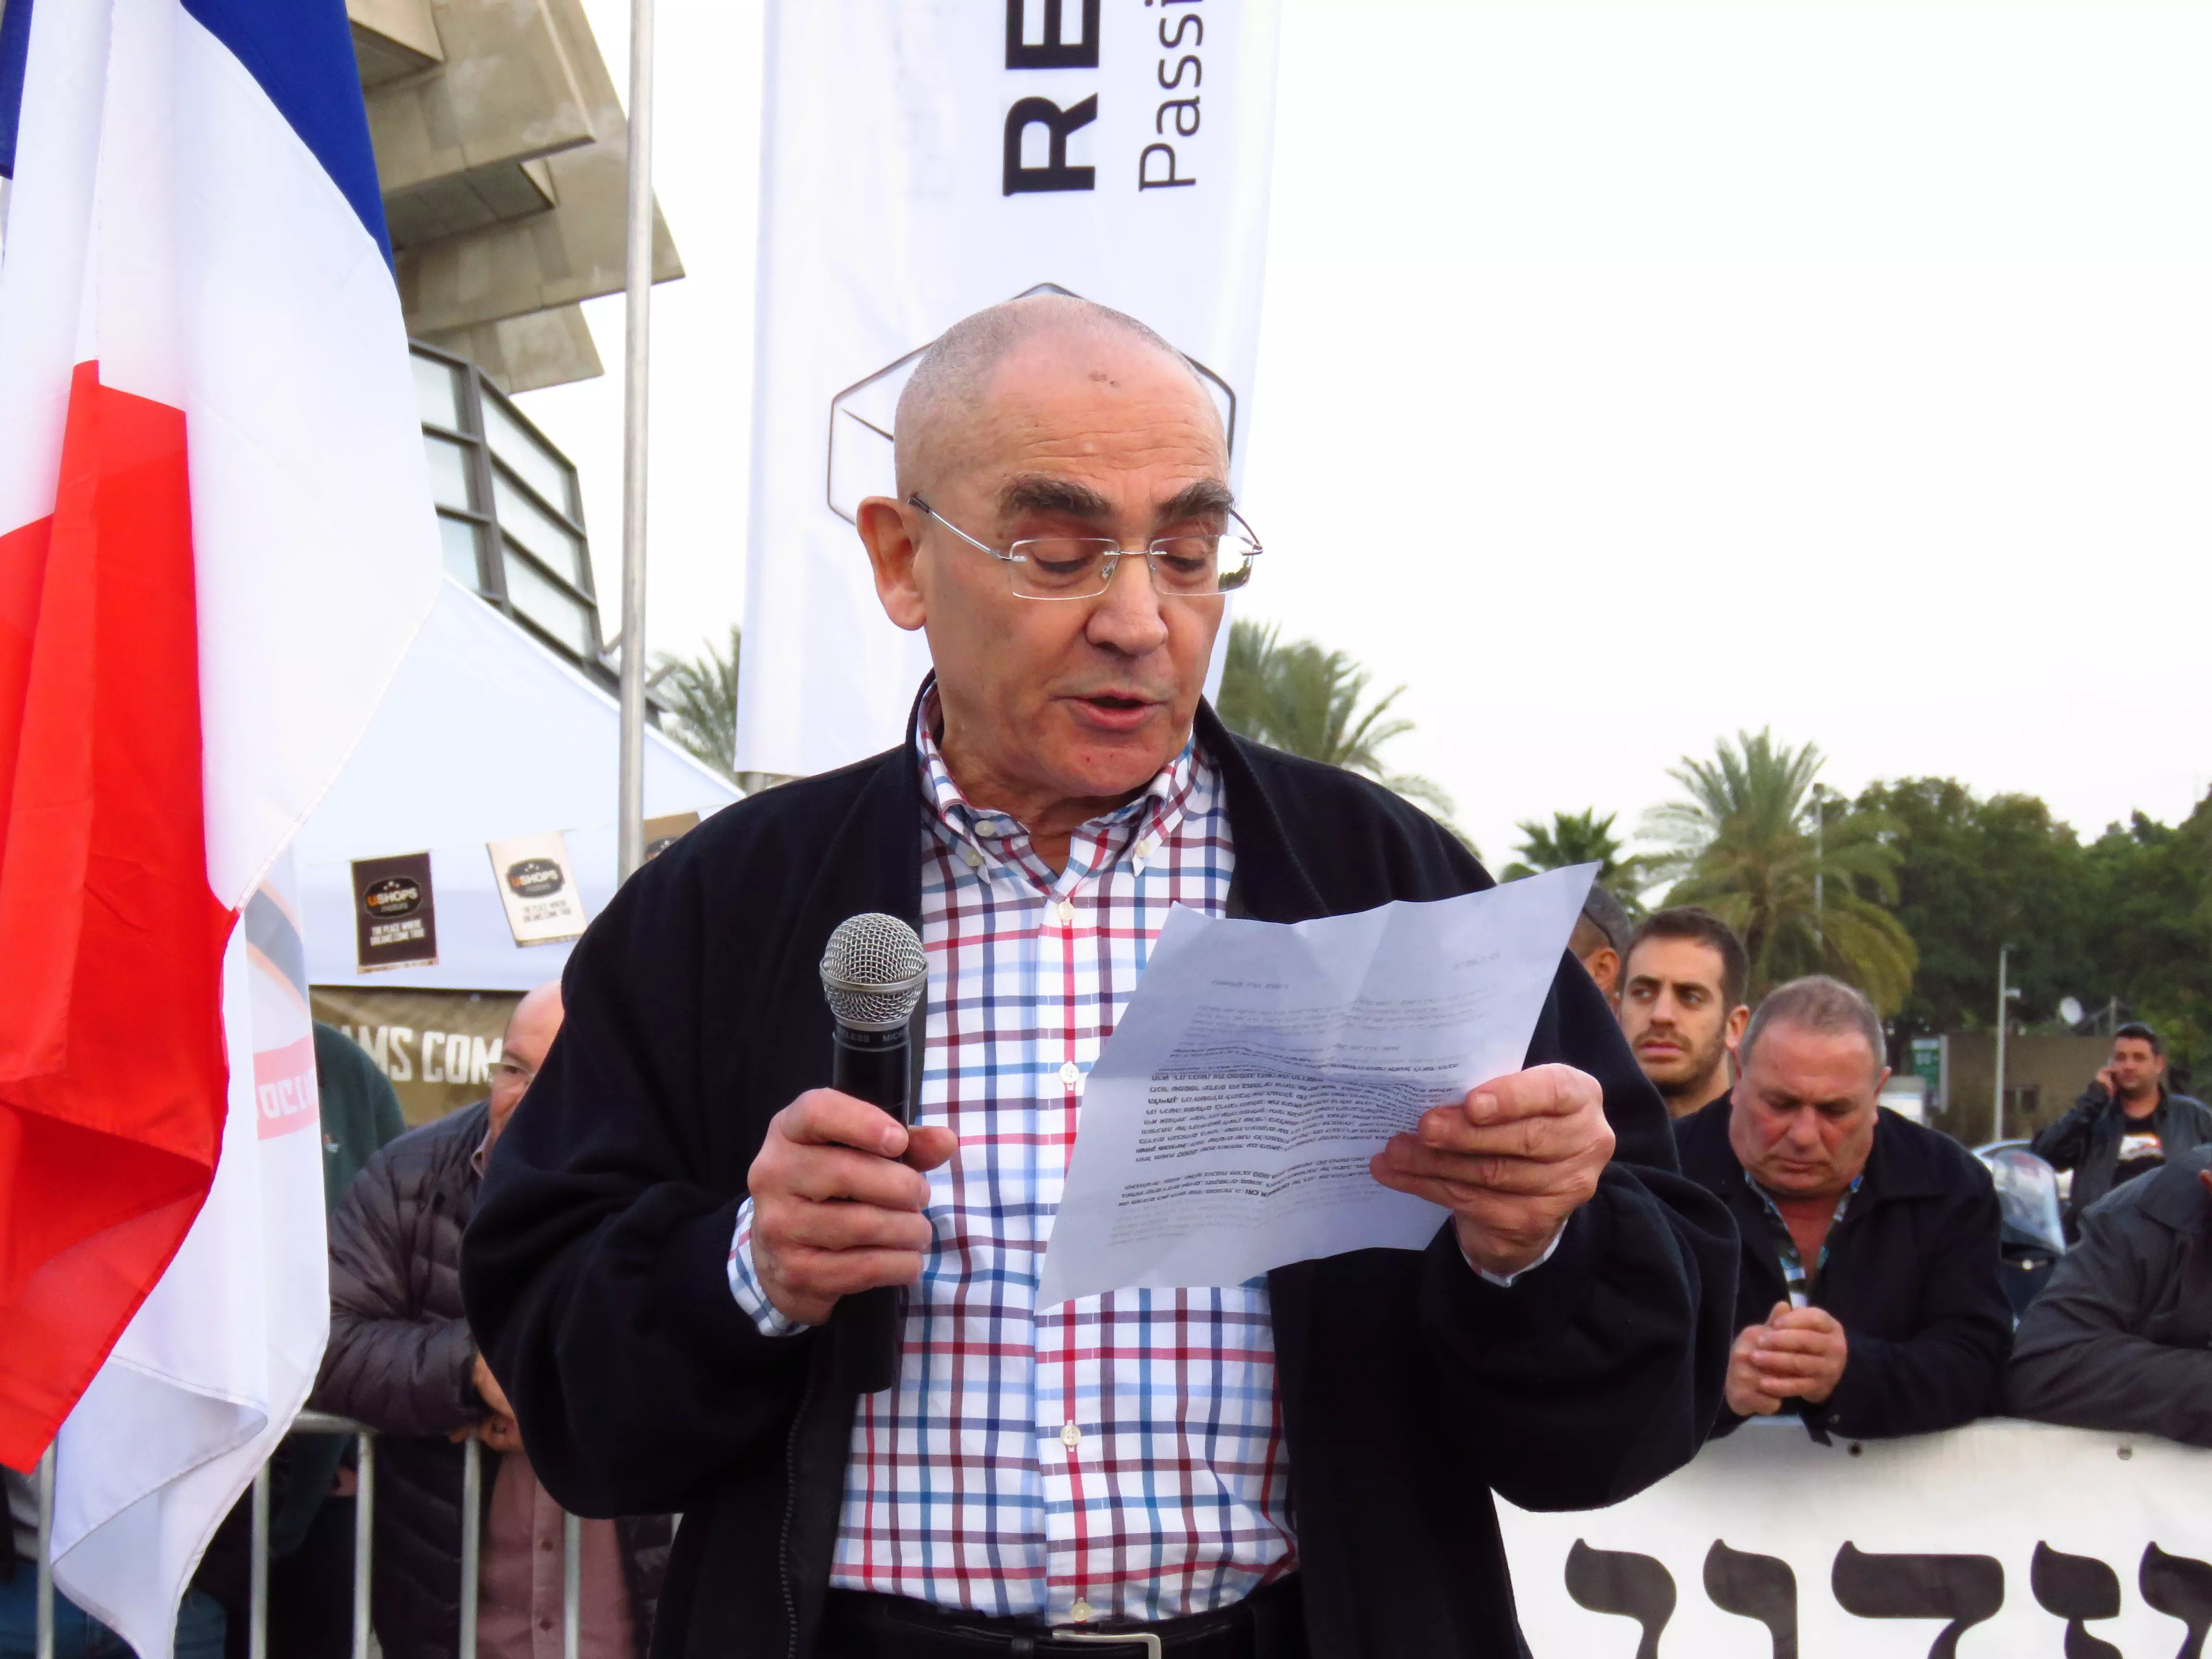 יואל קרסו, מבעלי "קרסו" יבואנית רנו לישראל גם נכח באירוע